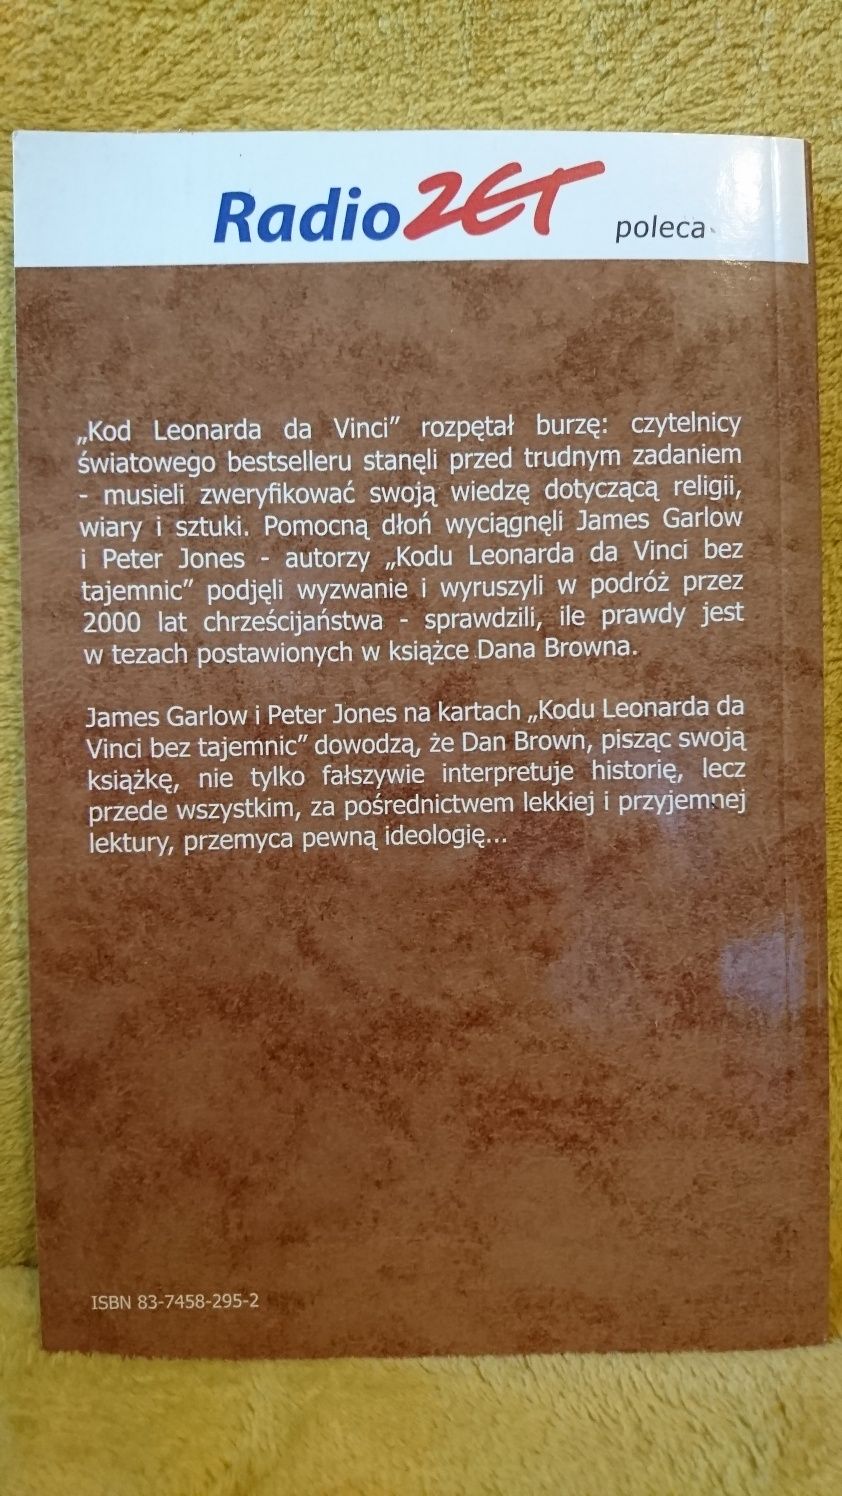 Kolekcja Bez Tajemnic - Kod Leonarda da Vinci.